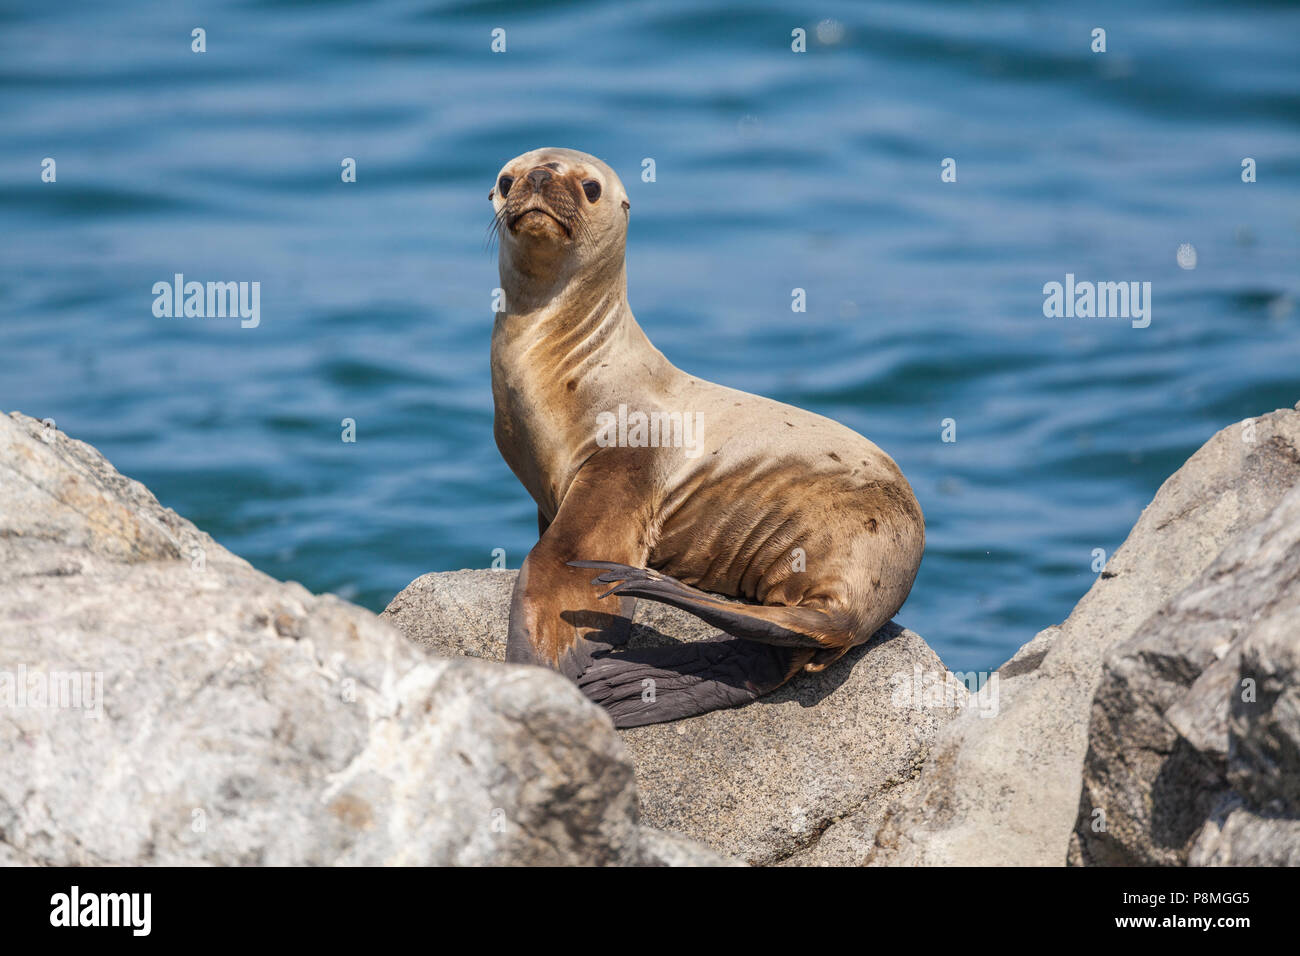 Sud Americana di pelliccia sigillo a prendere il sole sulla roccia in mare Foto Stock